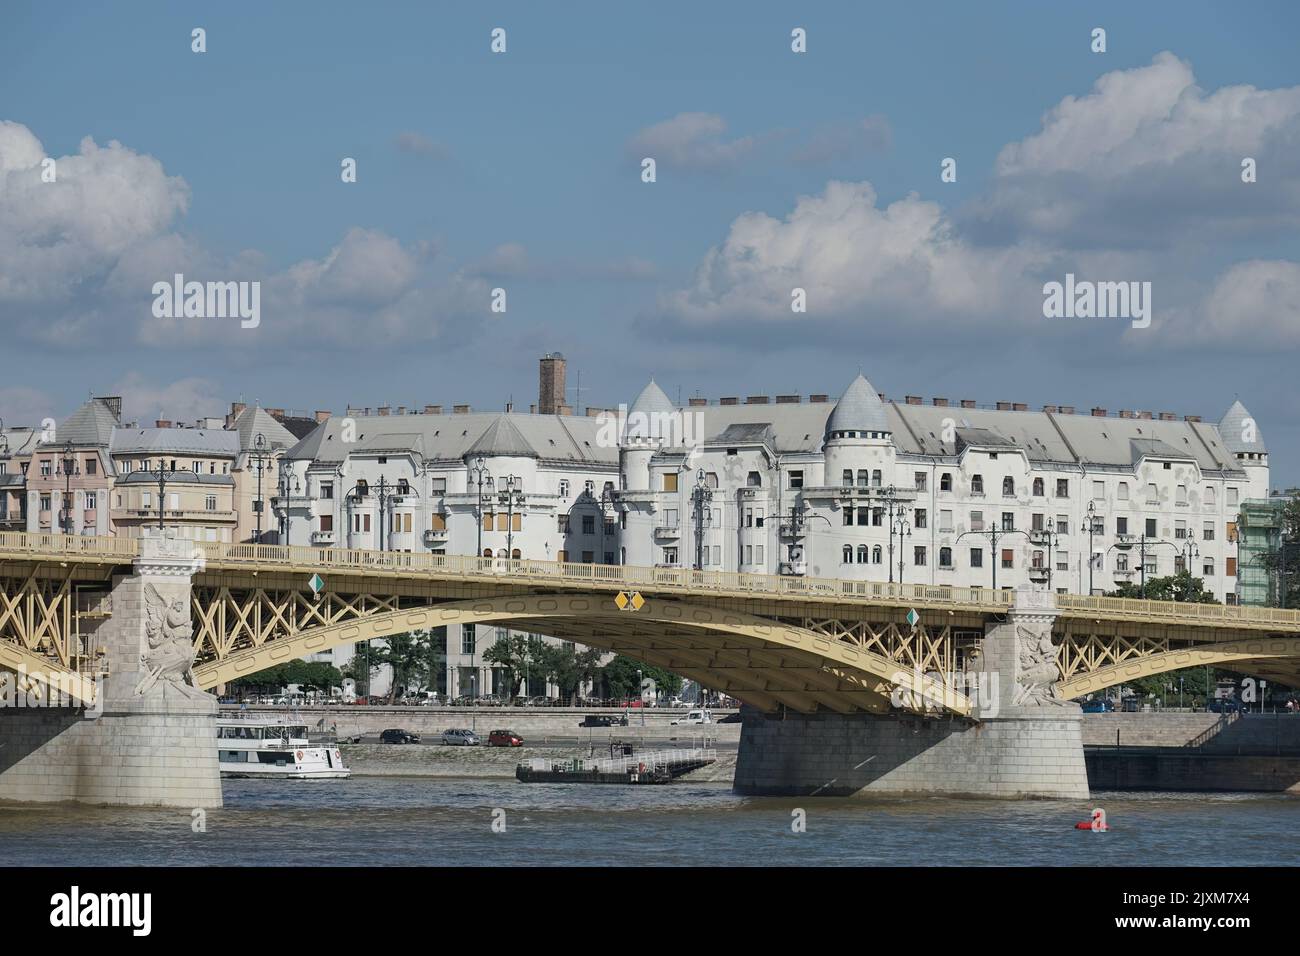 Budapest, Hungary - September 21 : Margaret Bridge in Budapest on September 21, 2014 Stock Photo